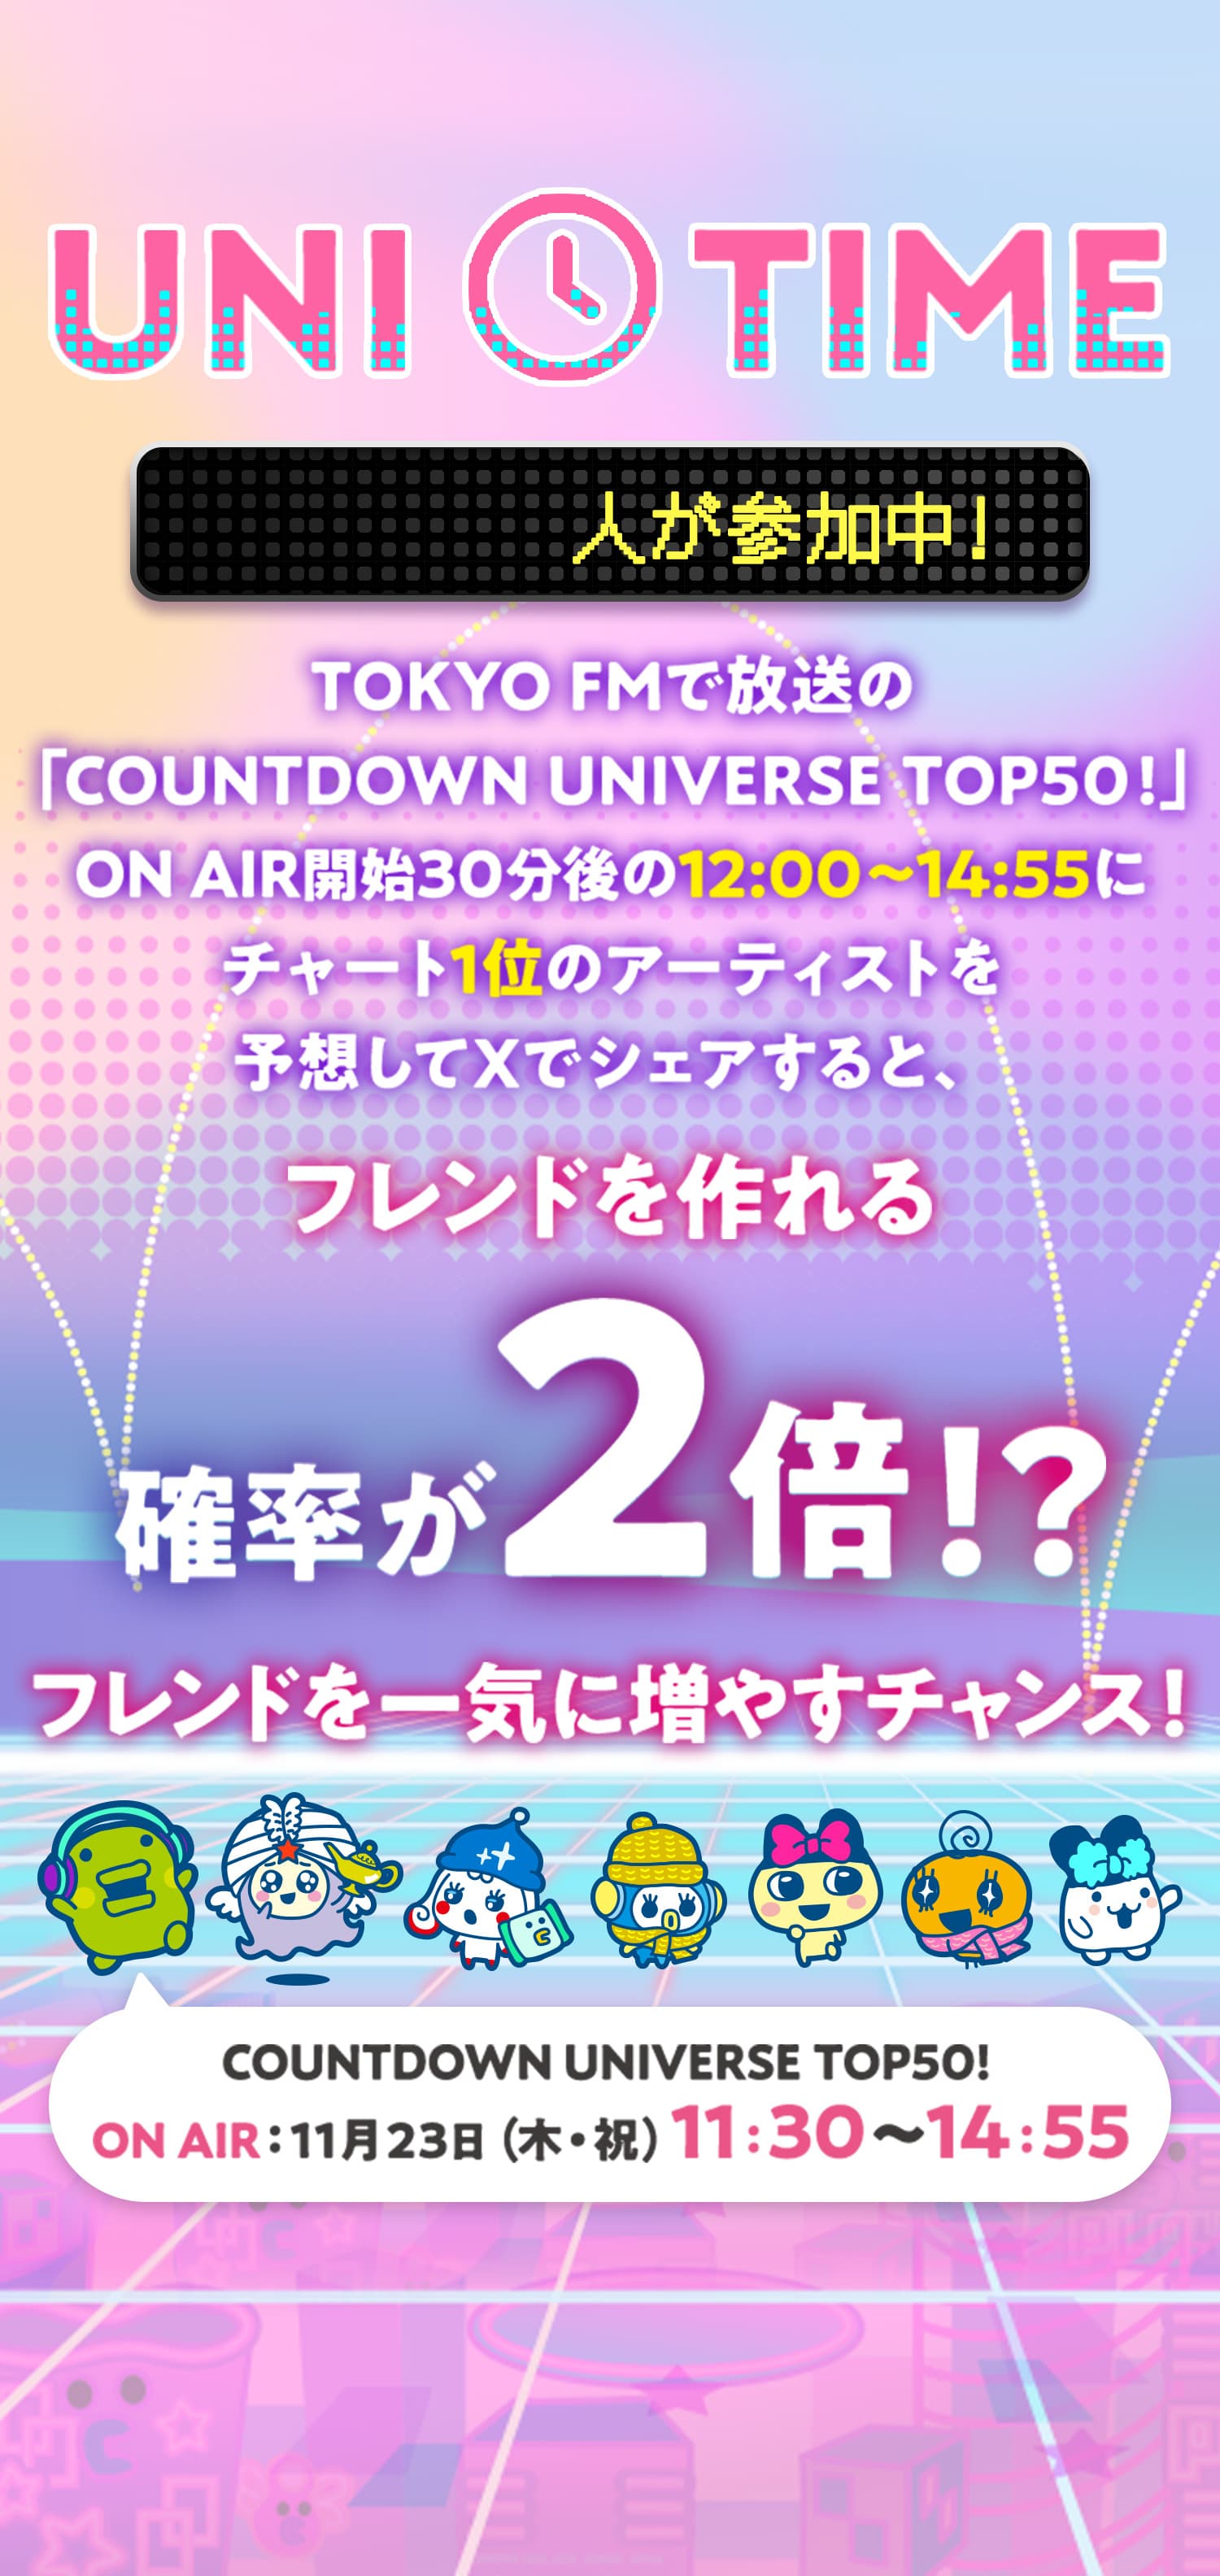 TOKYO FMで放送の「COUNTDOWN UNIVERSE TOP50!」ON AIR開始30分後の12:00〜14:55にチャート1位のアーティストを予想してXでシェアすると、フレンドを作れる確率が2倍!?フレンドを一気に増やすチャンス!COUNTDOWN UNIVERSE TOP50!ON AIR:11月23日（木・祝）11:30〜14:55